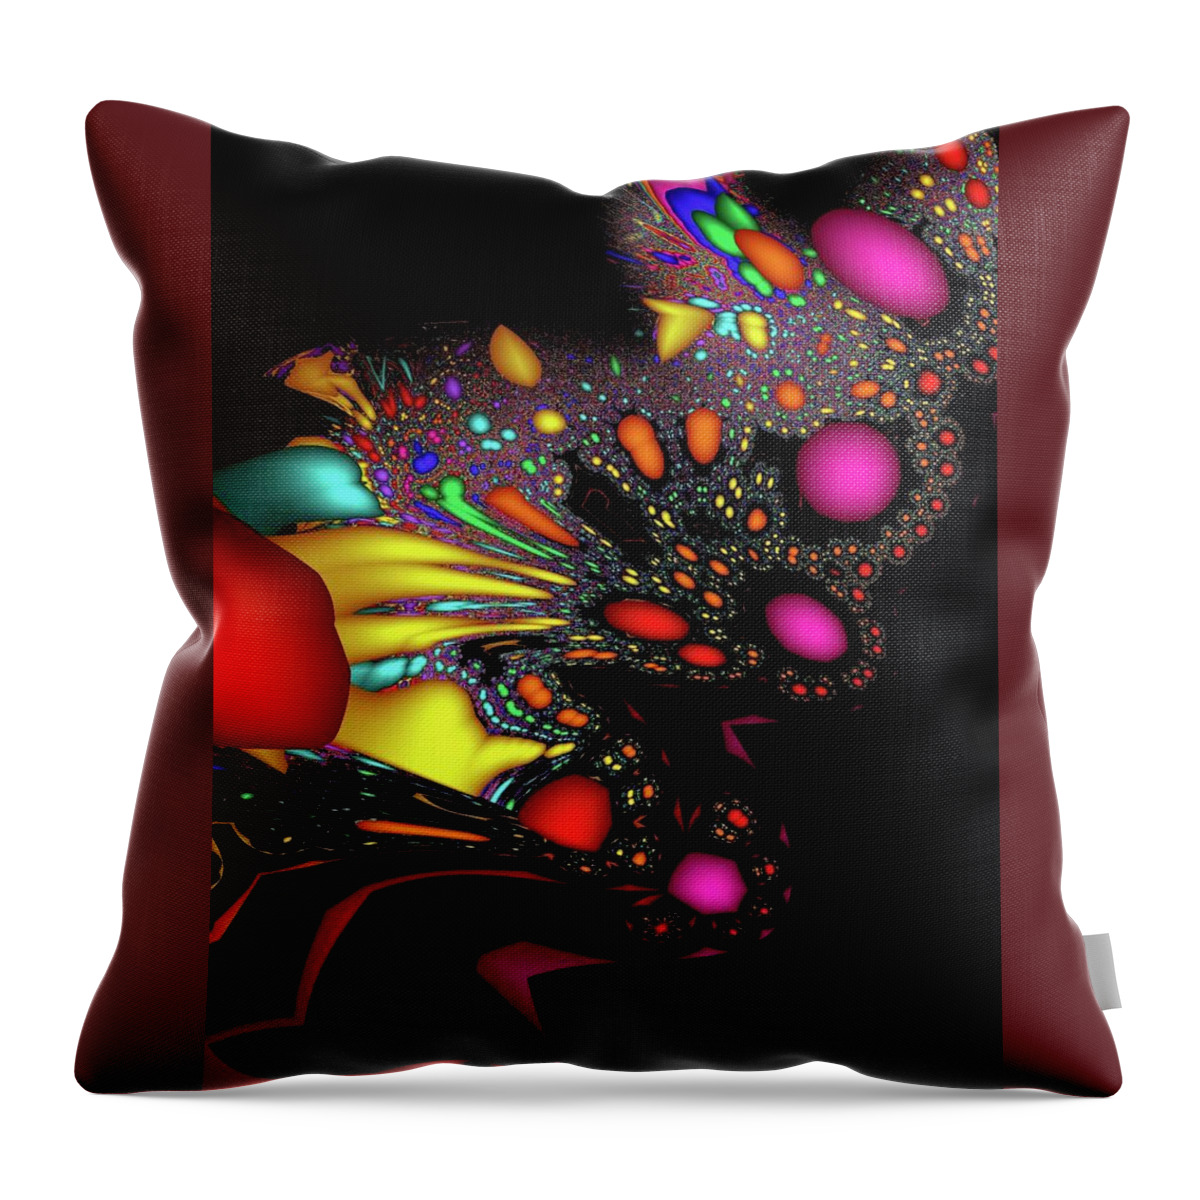 Art Throw Pillow featuring the digital art Storm Over Toontown by Richard Widows